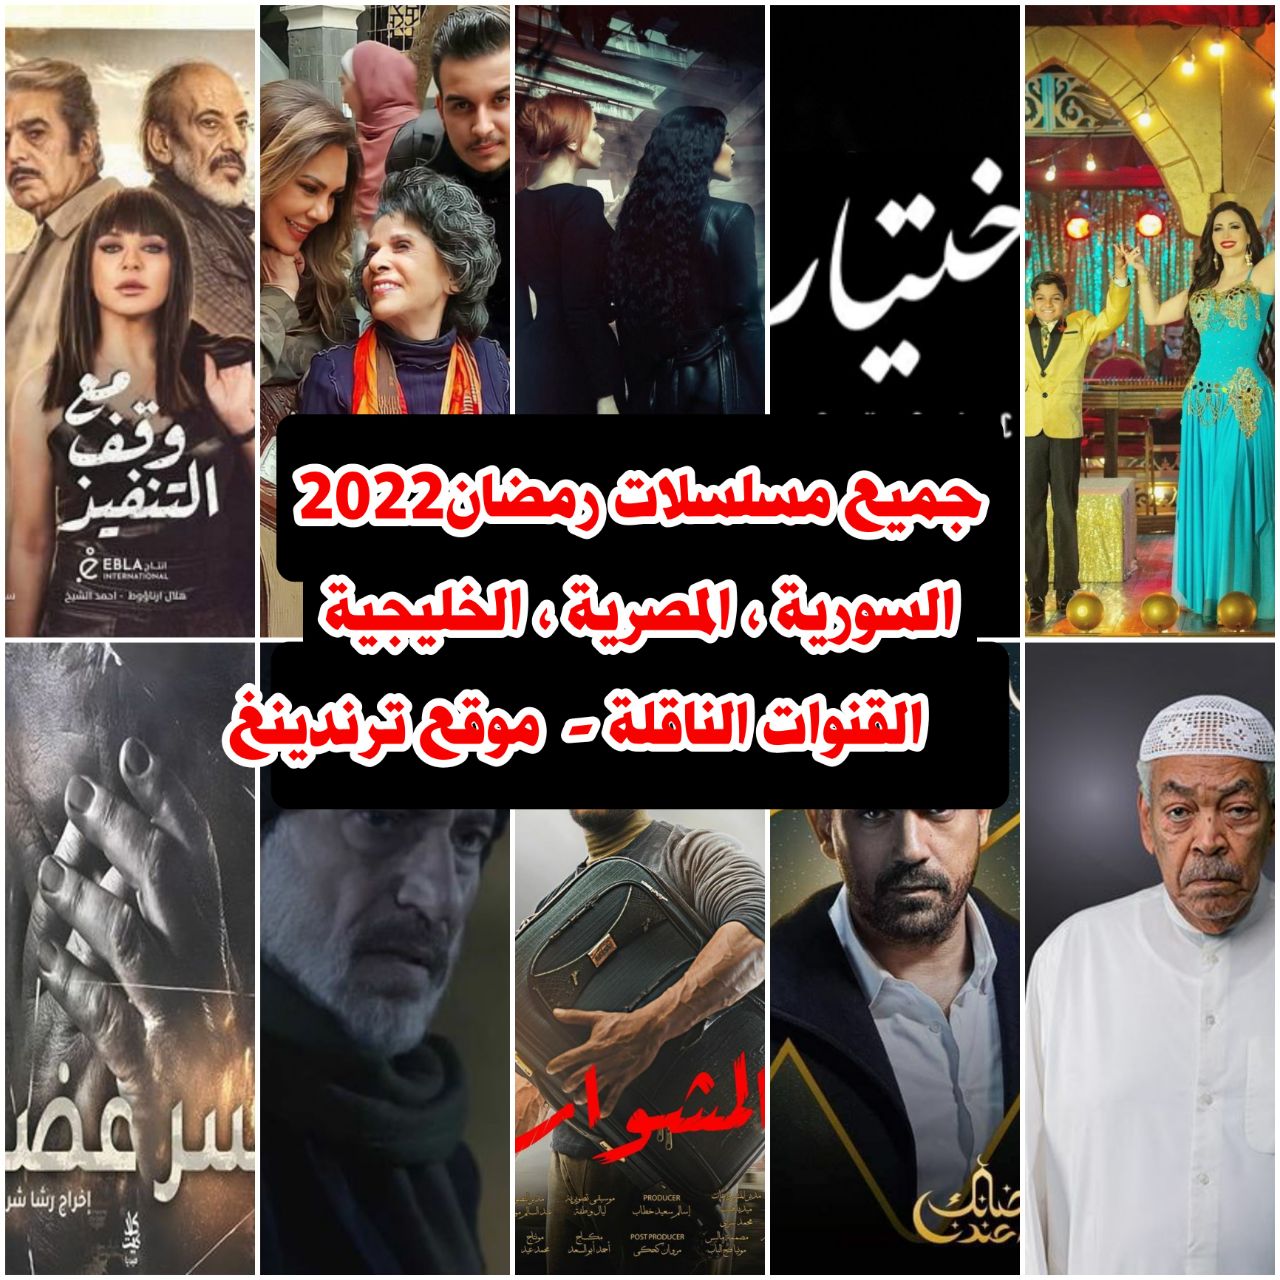 المواعيد و القنوات الناقلة .. القائمة الكاملة لـ جميع مسلسلات رمضان 2022 السورية والمصرية والخليجية